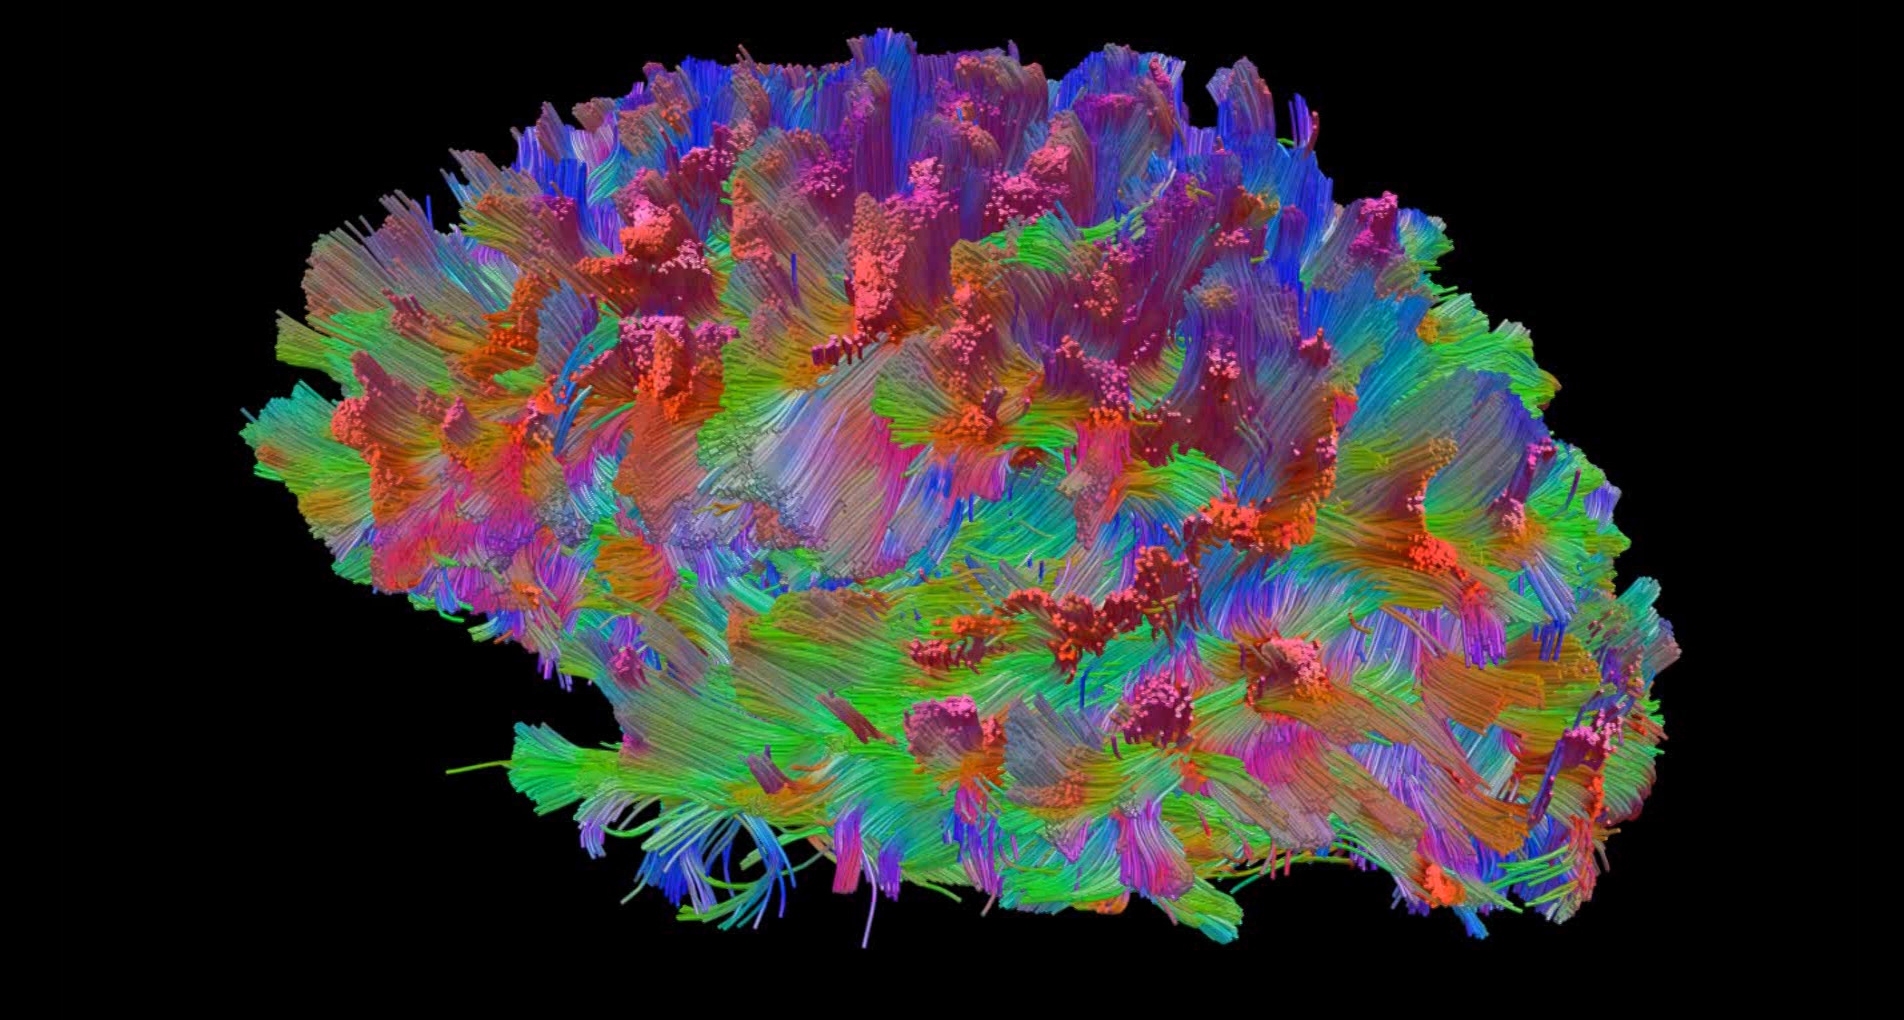 Universidade do Minho desenvolve modelo cerebral em fibra